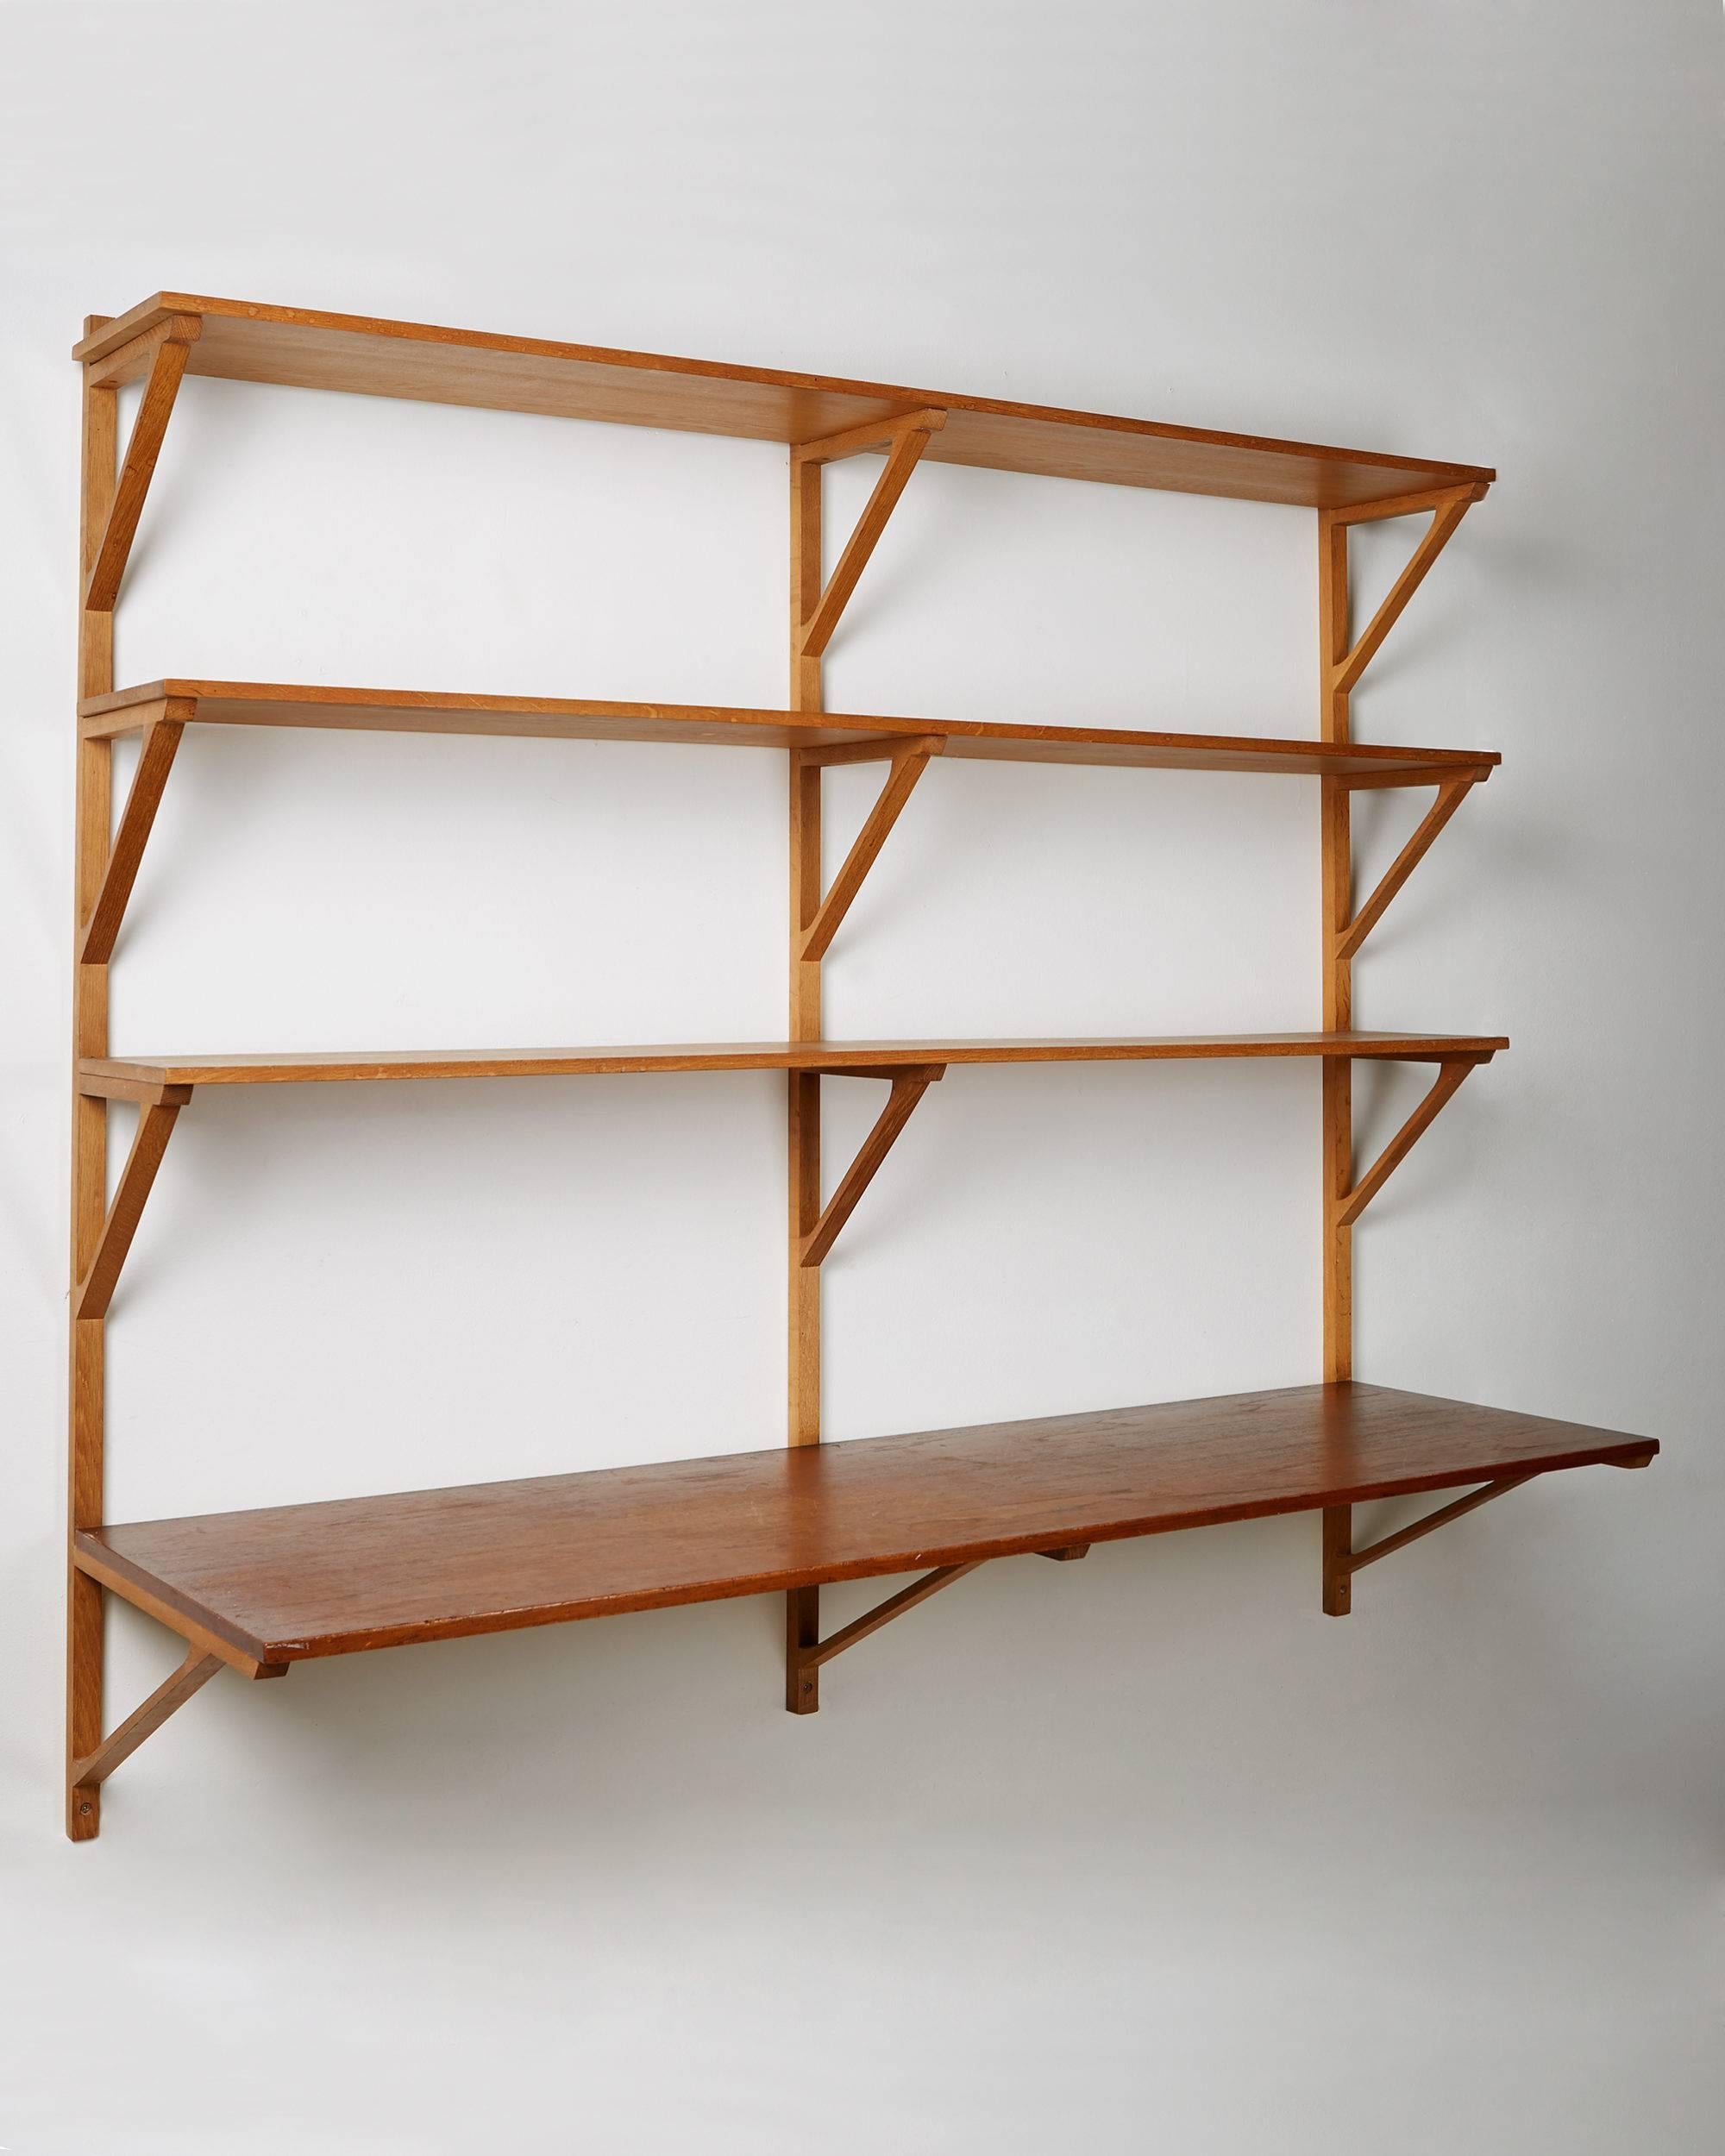 Book shelves designed by Börge Mogensen for Erhard Rasmussen,
Denmark, 1950s.
Oak and teak.
Measures:
H 136 cm/ 4' 5 1/2''
W 154 cm/ 5' 1/2''
Depth of the upper shelves 24 cm/ 9 1/2''
Depth of the Writing shelf 46 cm/ 18''.
 